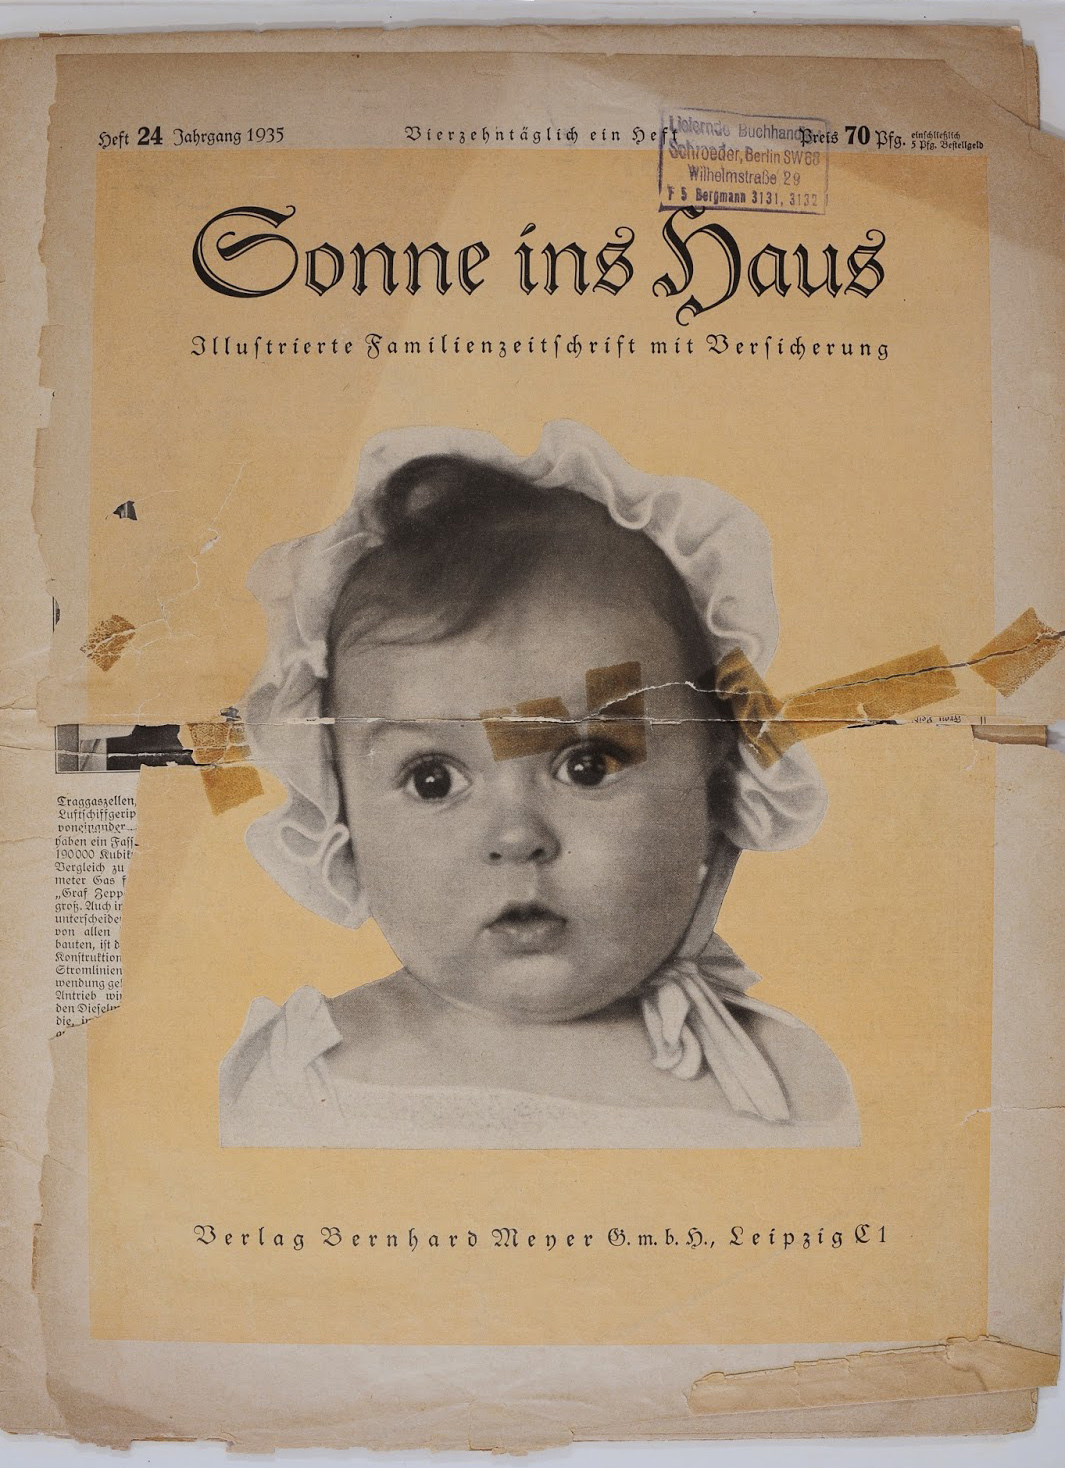 The Nazi family magazine 